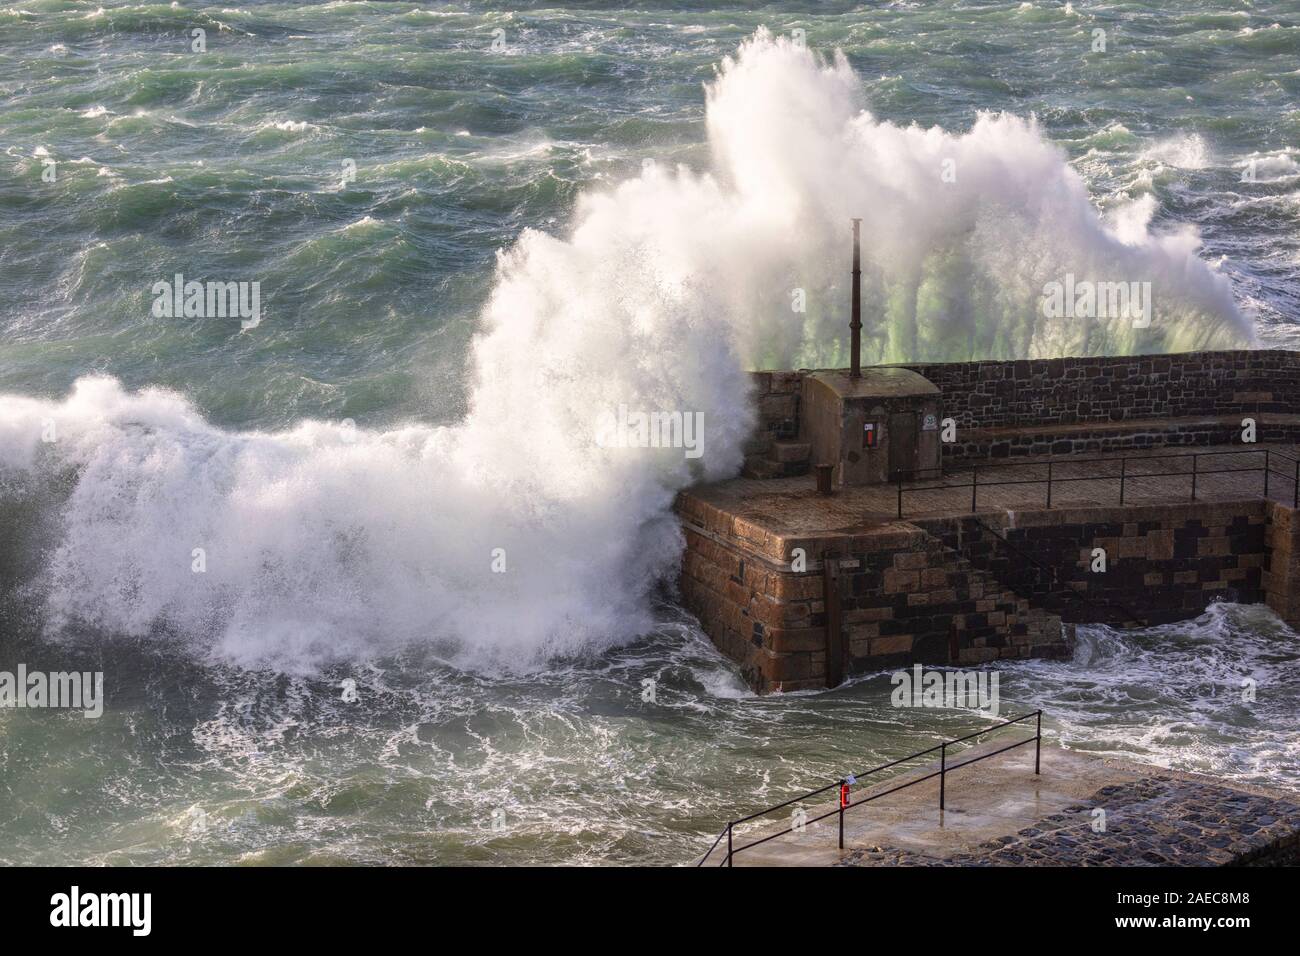 Atiyah tempête. 56 MPH winds devrait frapper Crnwall. Meneau Harbour est battue par des vagues énormes. Photographié depuis les falaises au-dessus du port. Banque D'Images